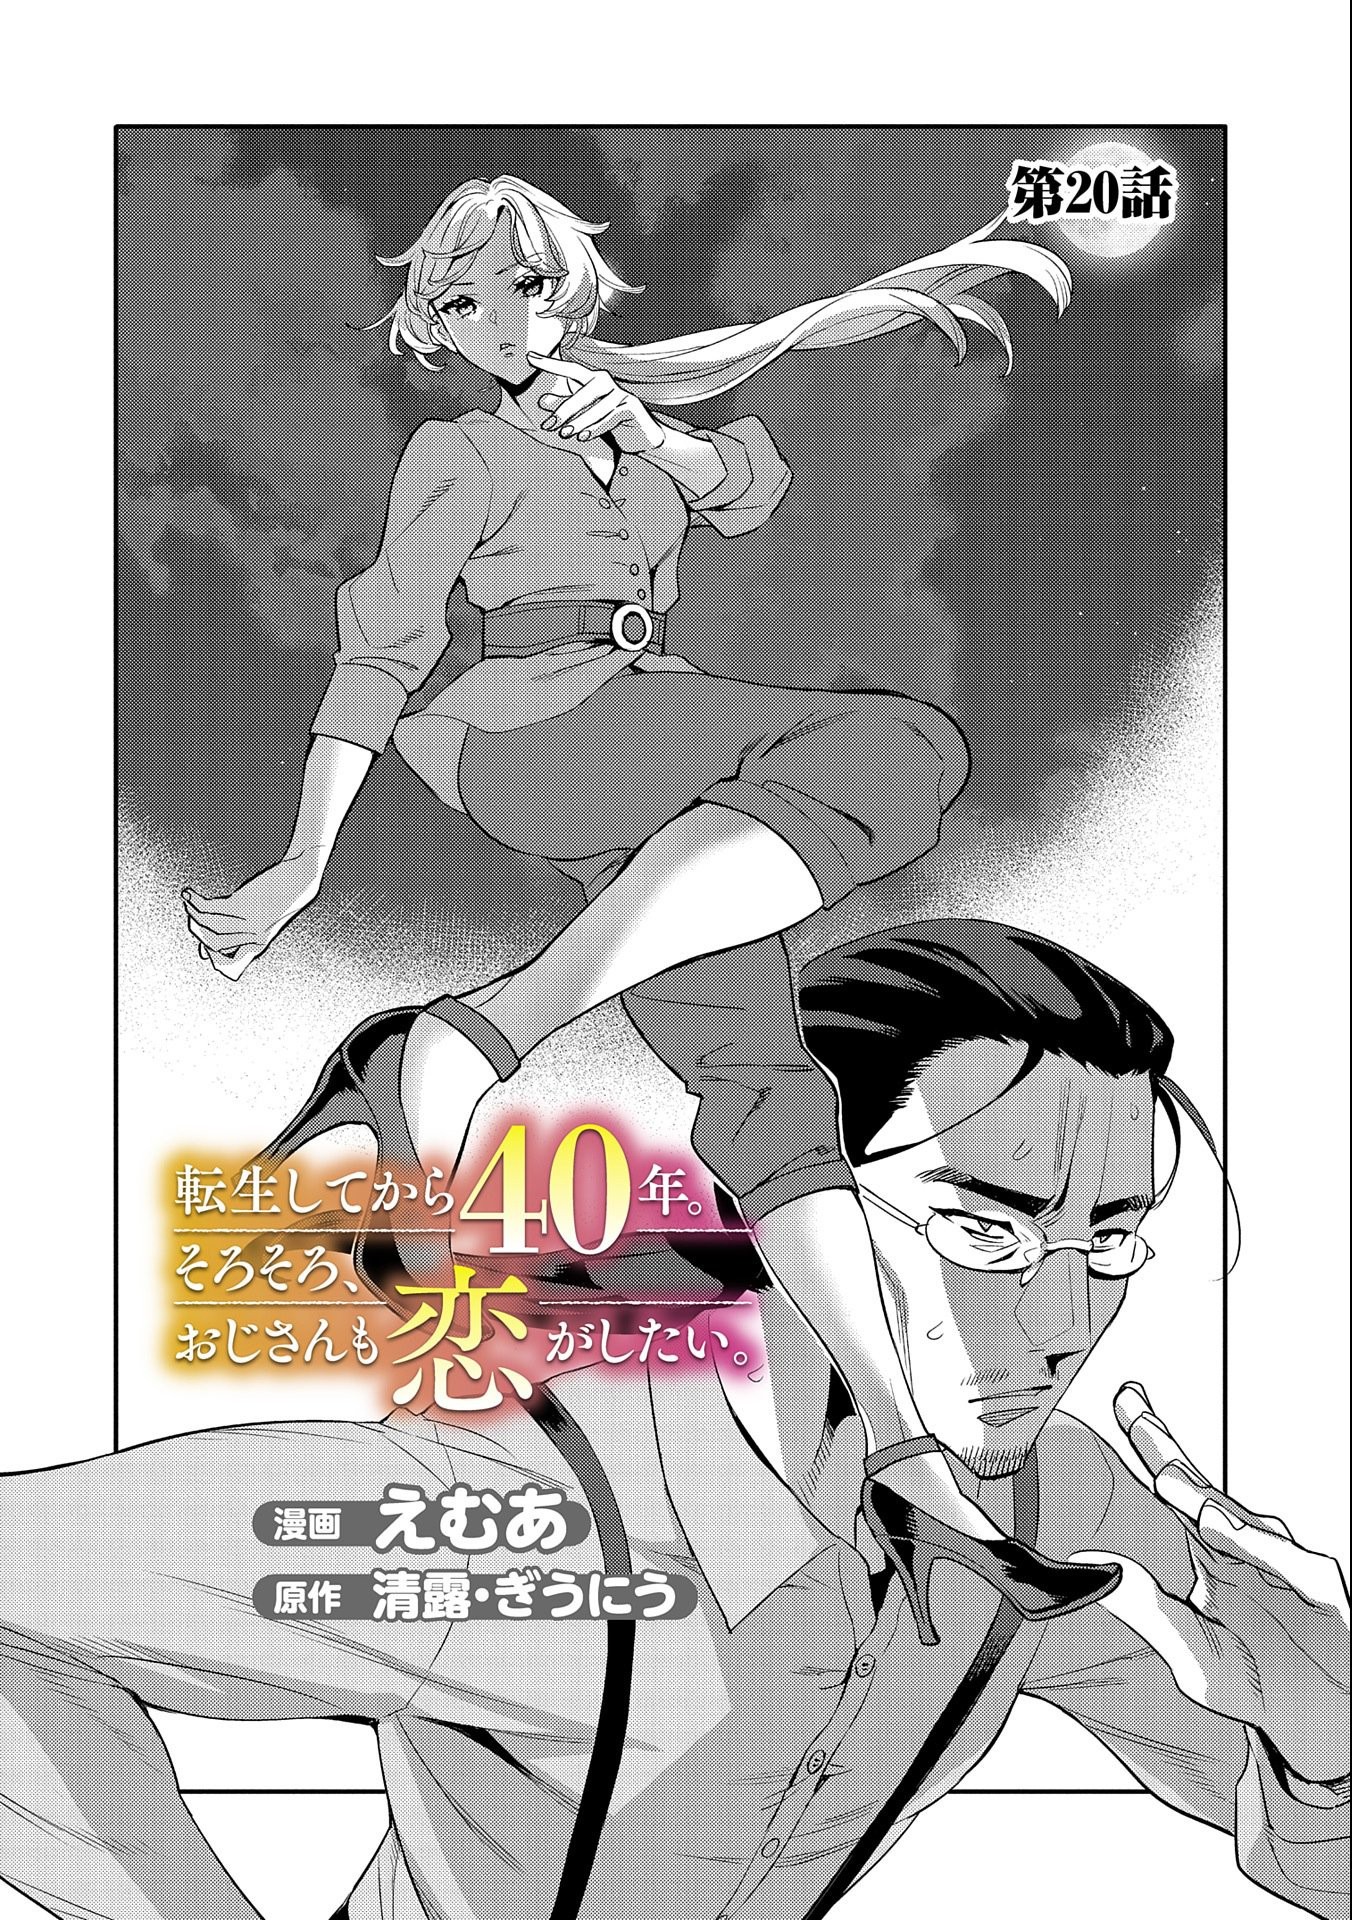 Manga Like Tensei Shitekara 40-nen. Sorosoro, Ojisan mo Koi ga Shitai.